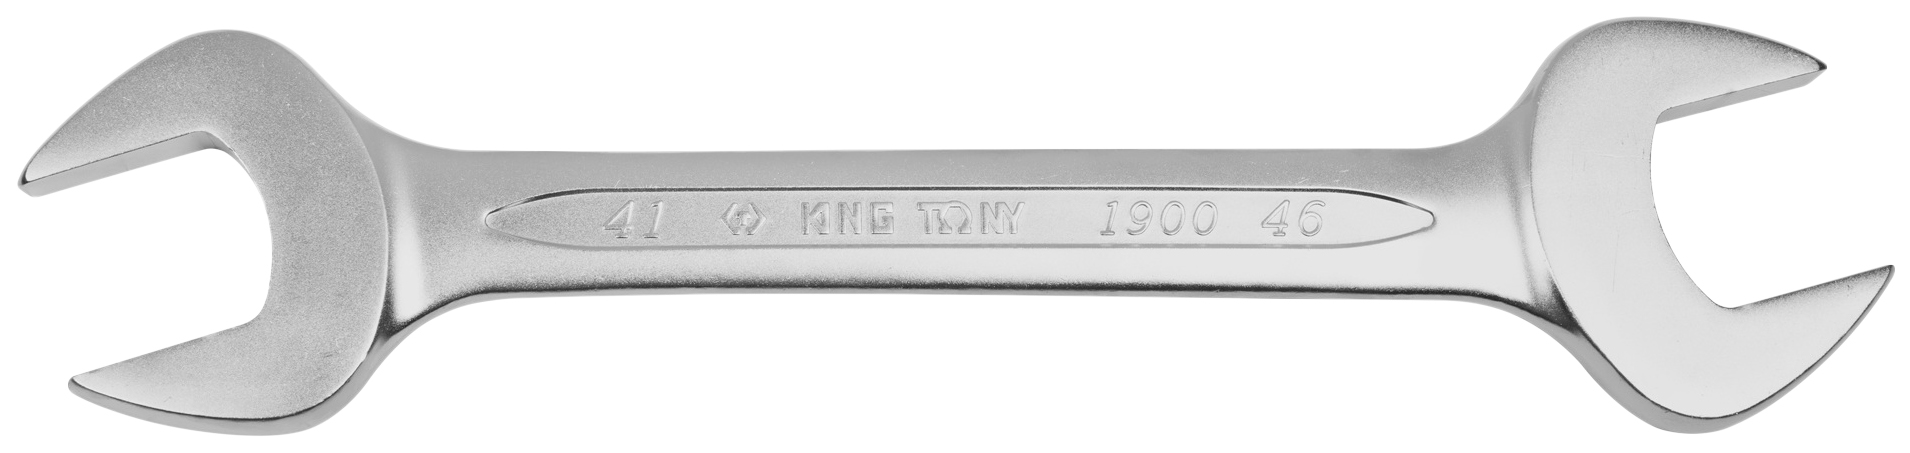 Рожковый ключ KING TONY 19004146 ключ для прокачки тормозов king tony